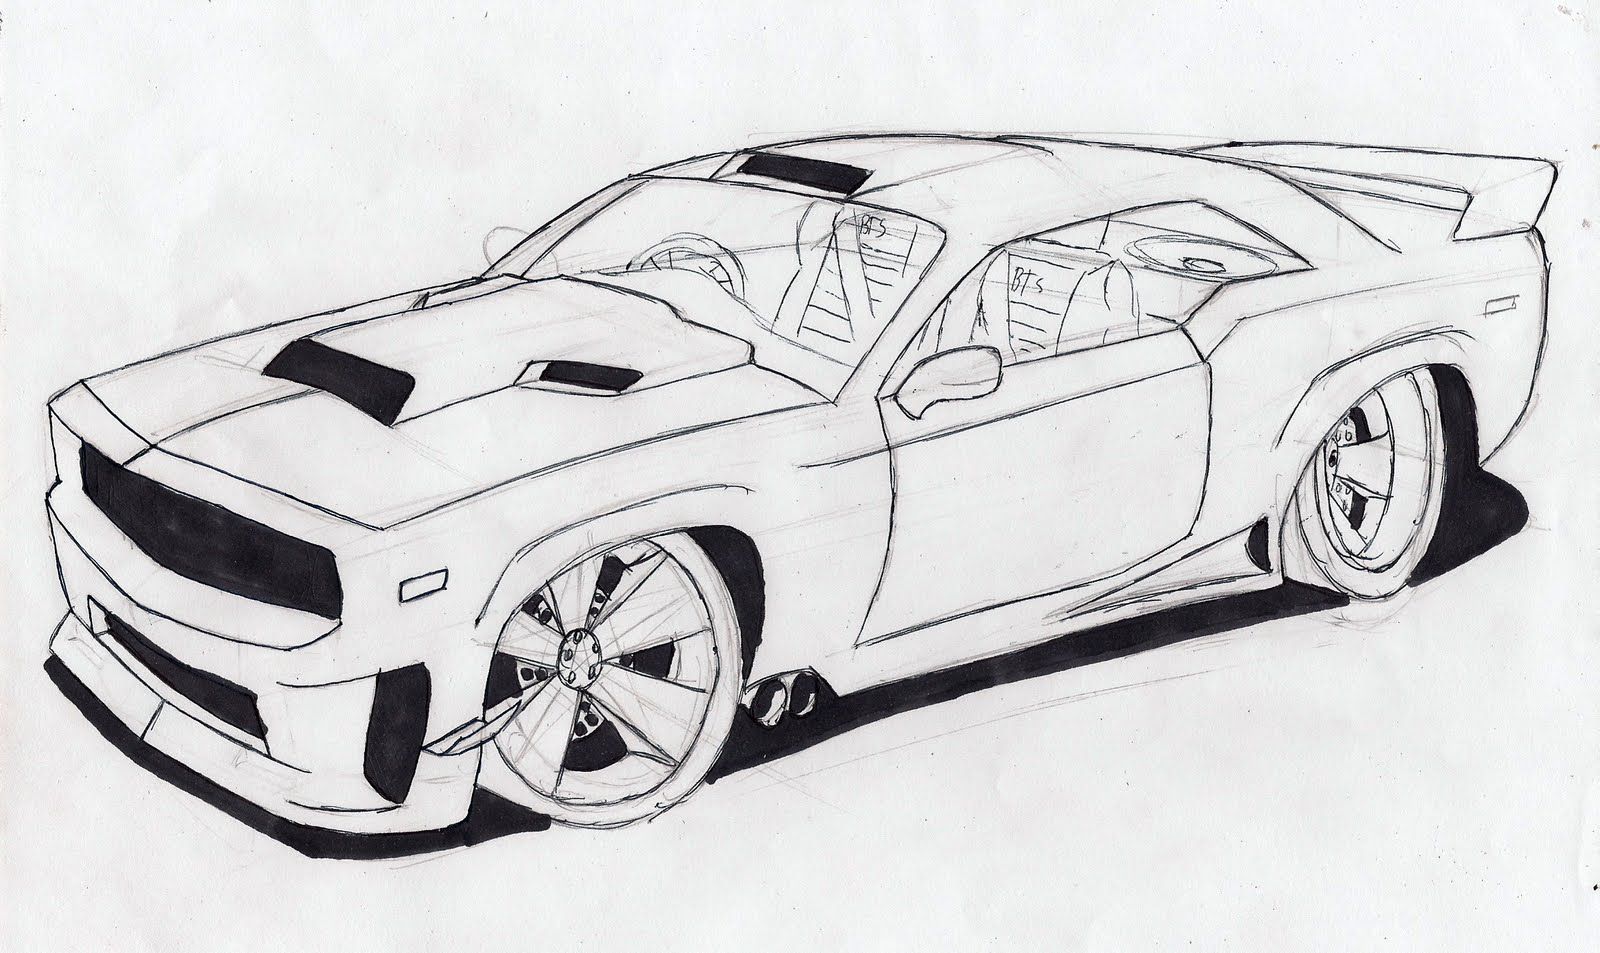 Como desenhar um carro, fácil passo a passo para iniciantes com esse vídeo tutorial para aprender a desenhar um veículo ou automóvel.